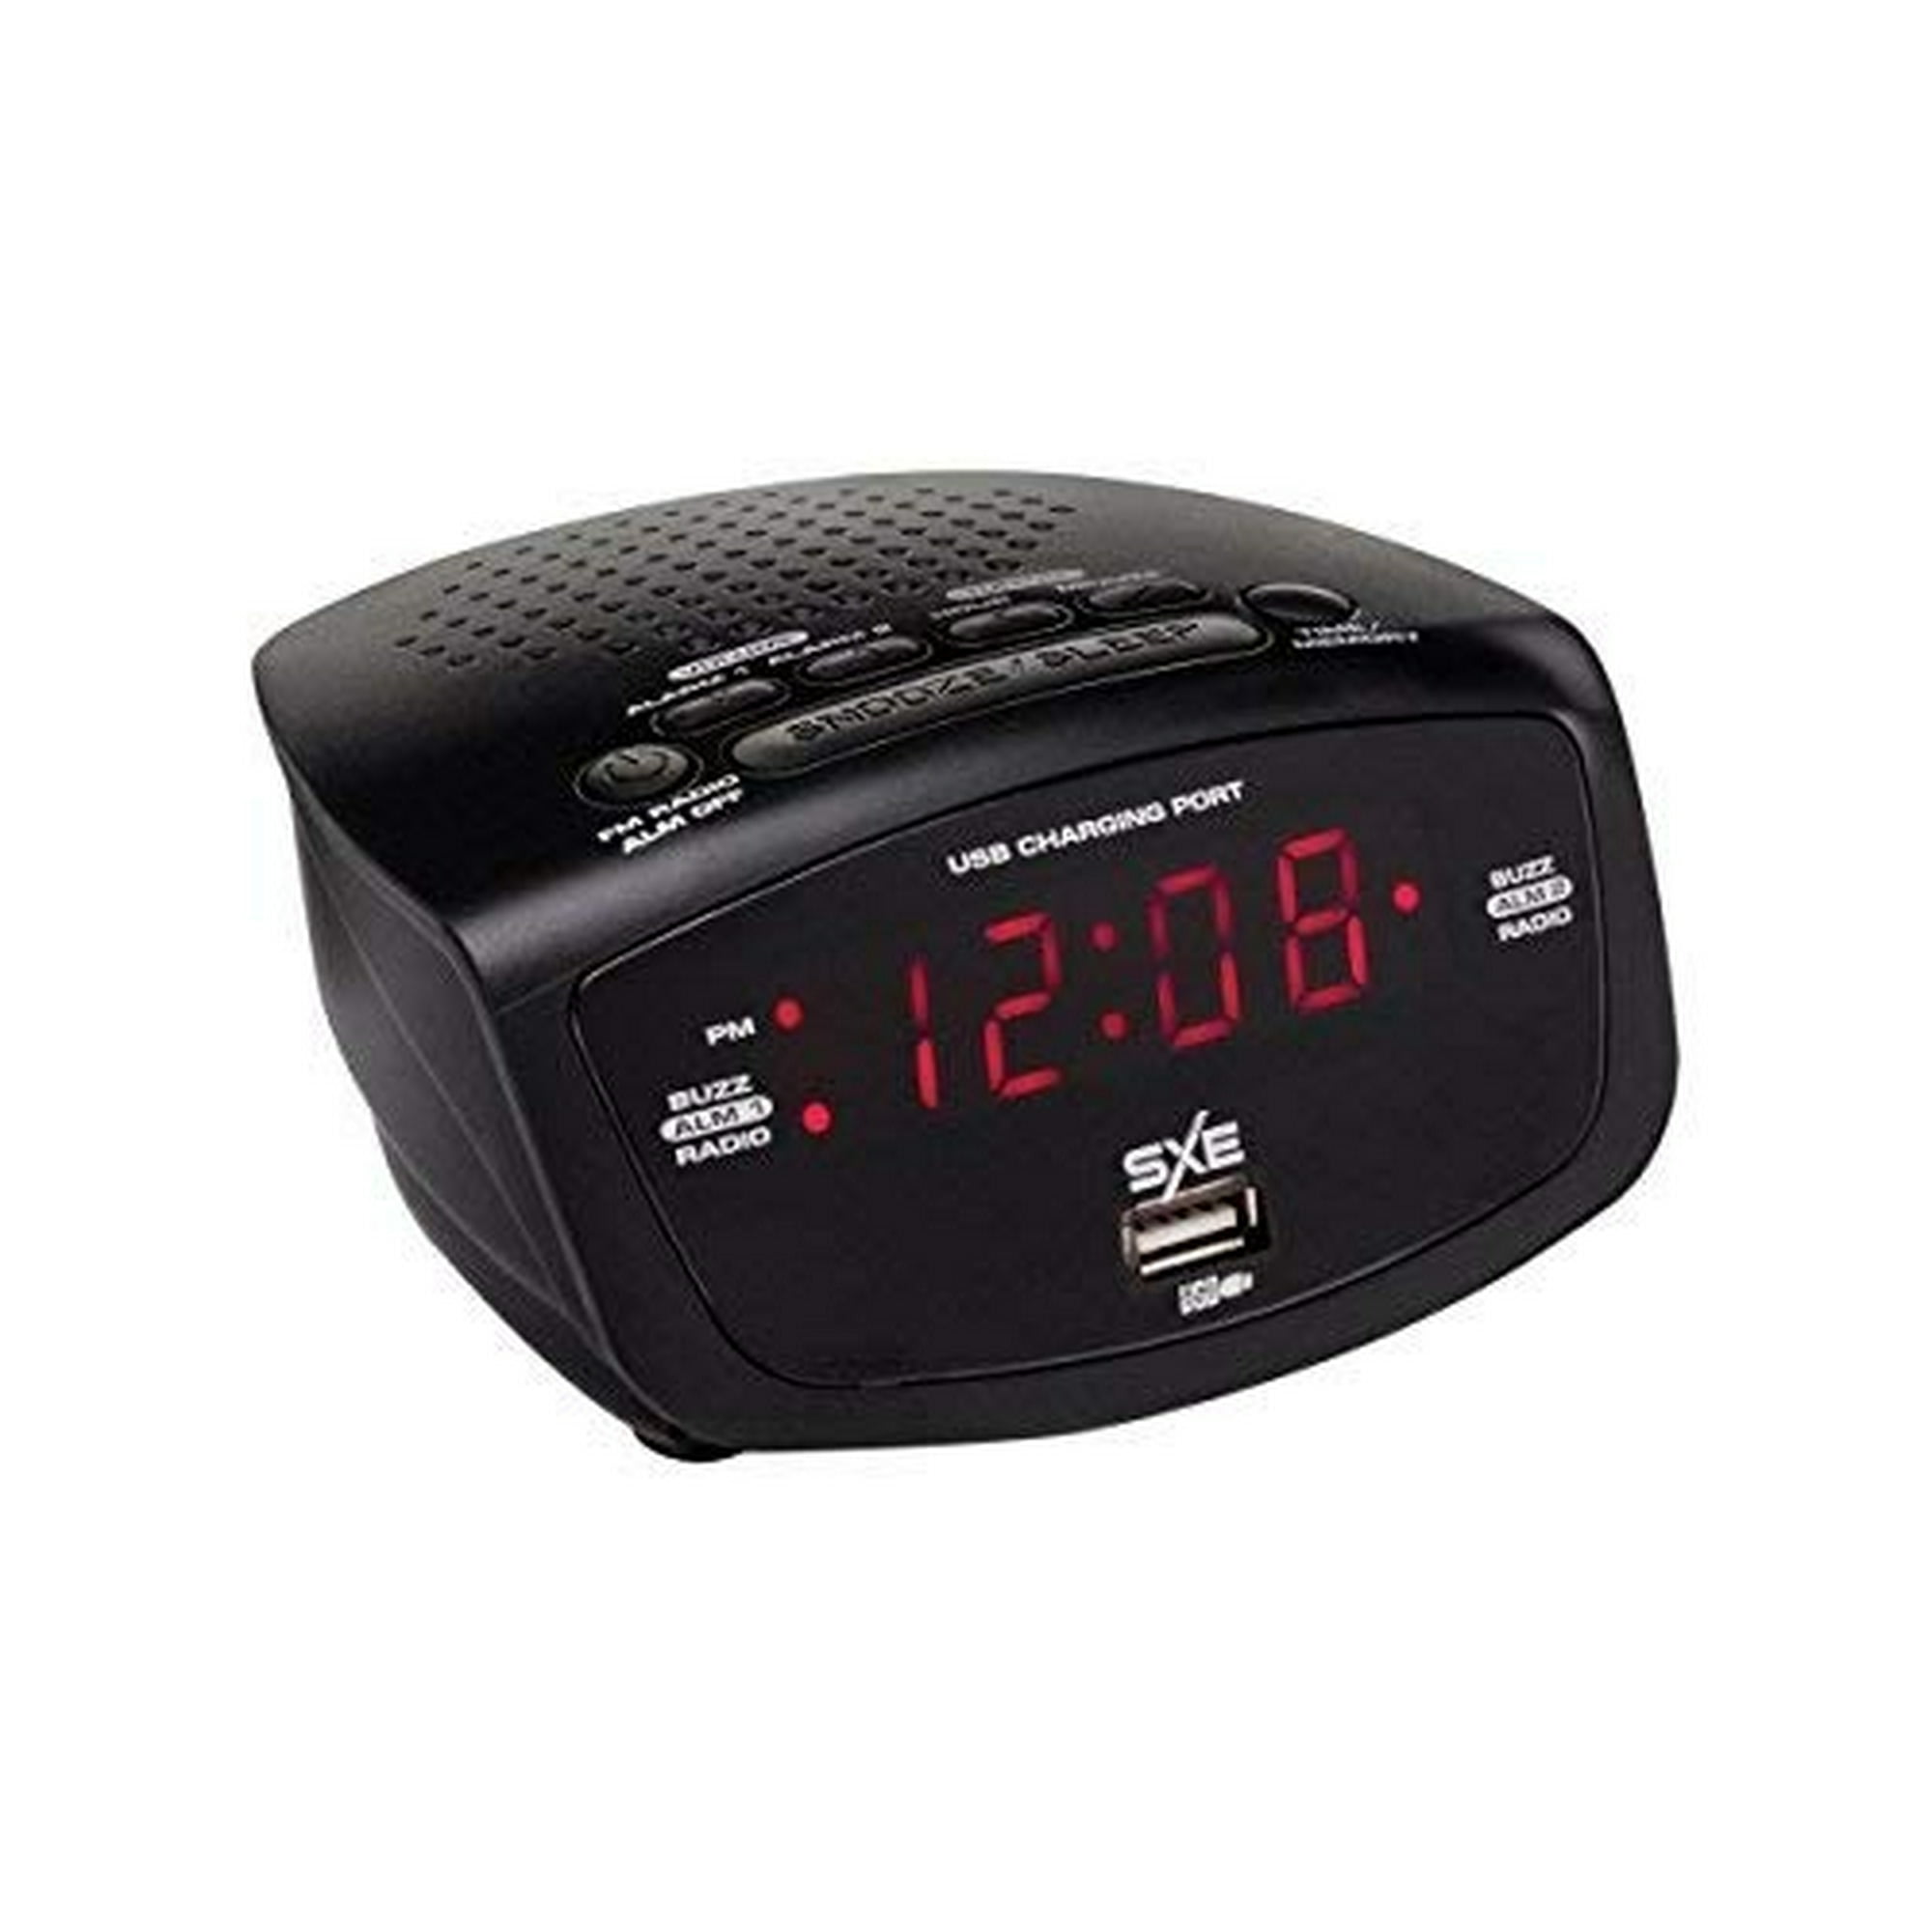 Radio Reloj Despertador Select Sound 4333 / Negro